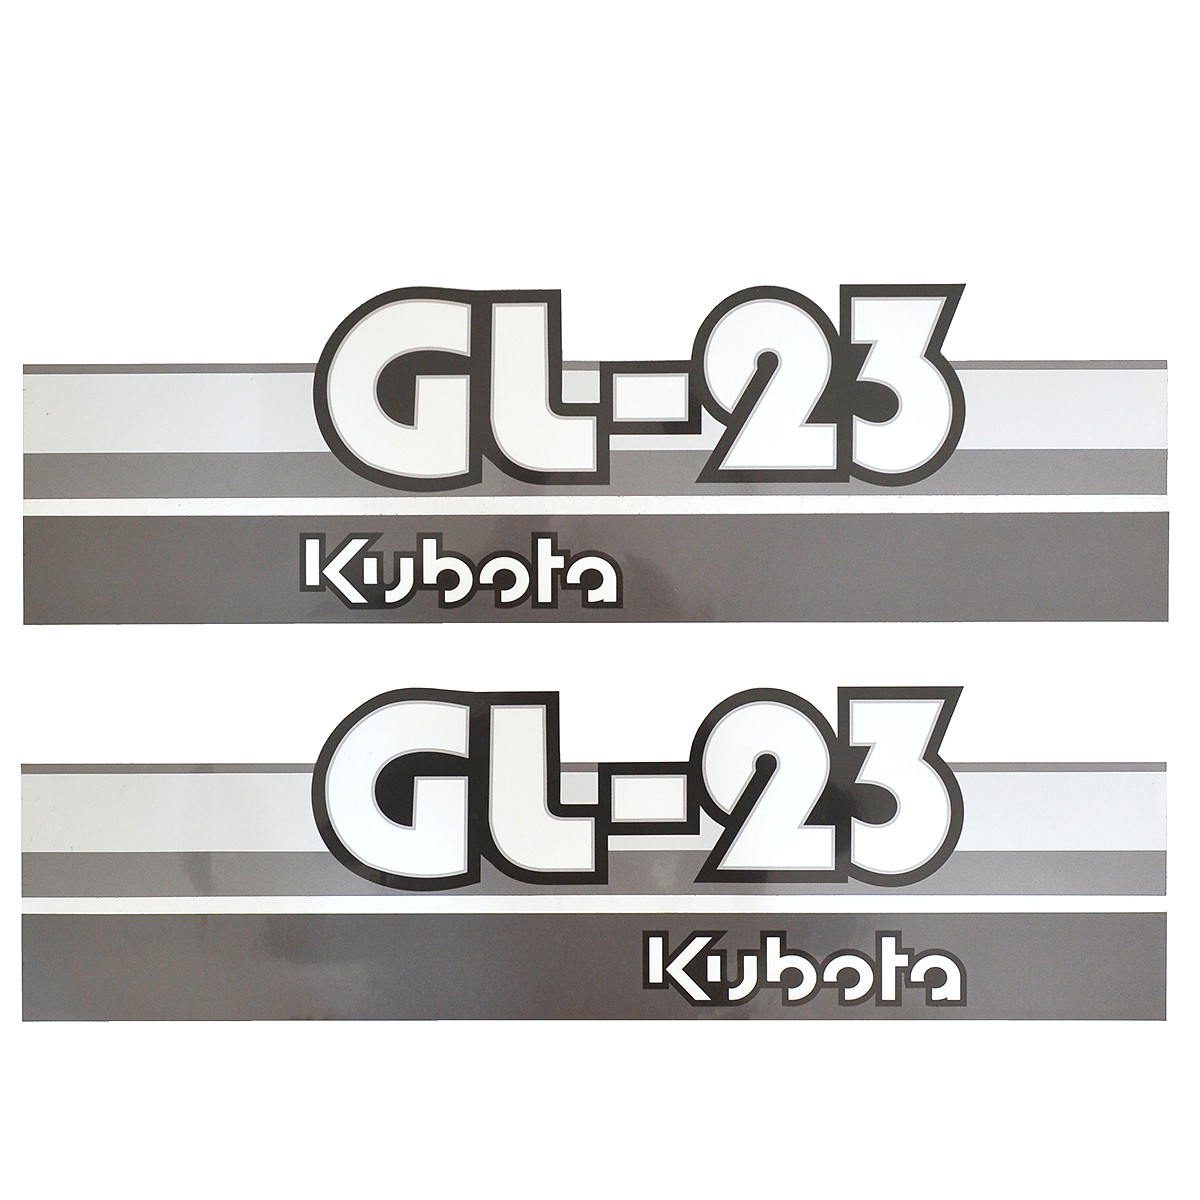 Adhesivos Kubota GL23